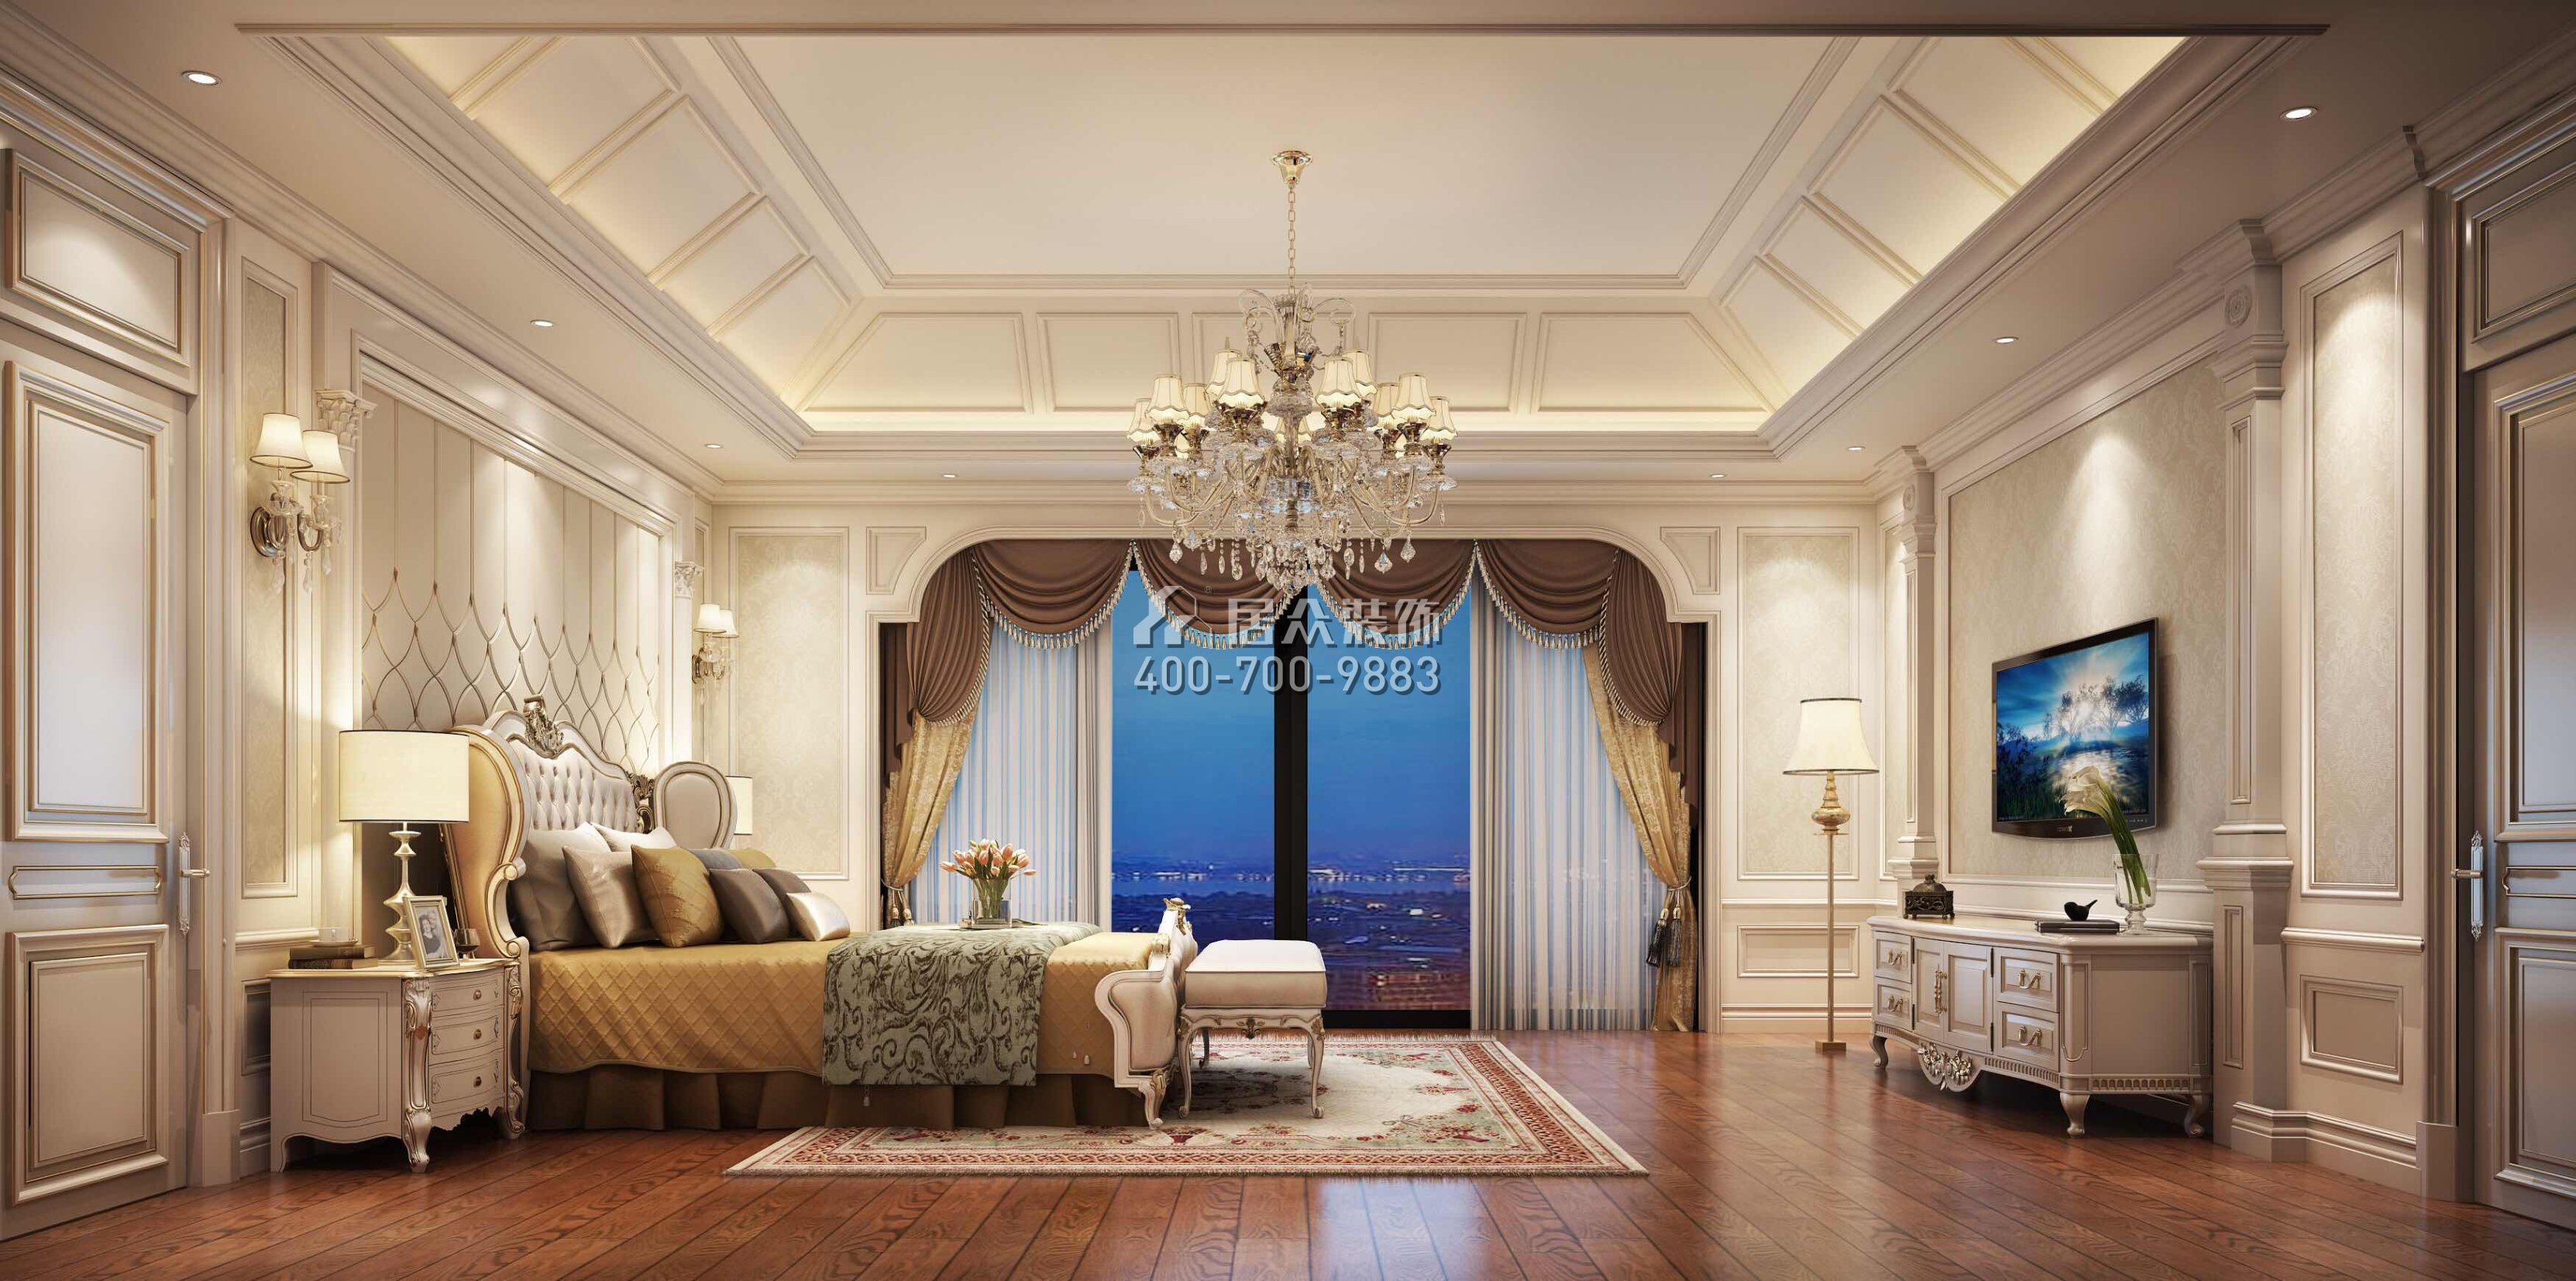 海逸豪庭御翠湖畔1100平方米欧式风格别墅户型卧室装修效果图